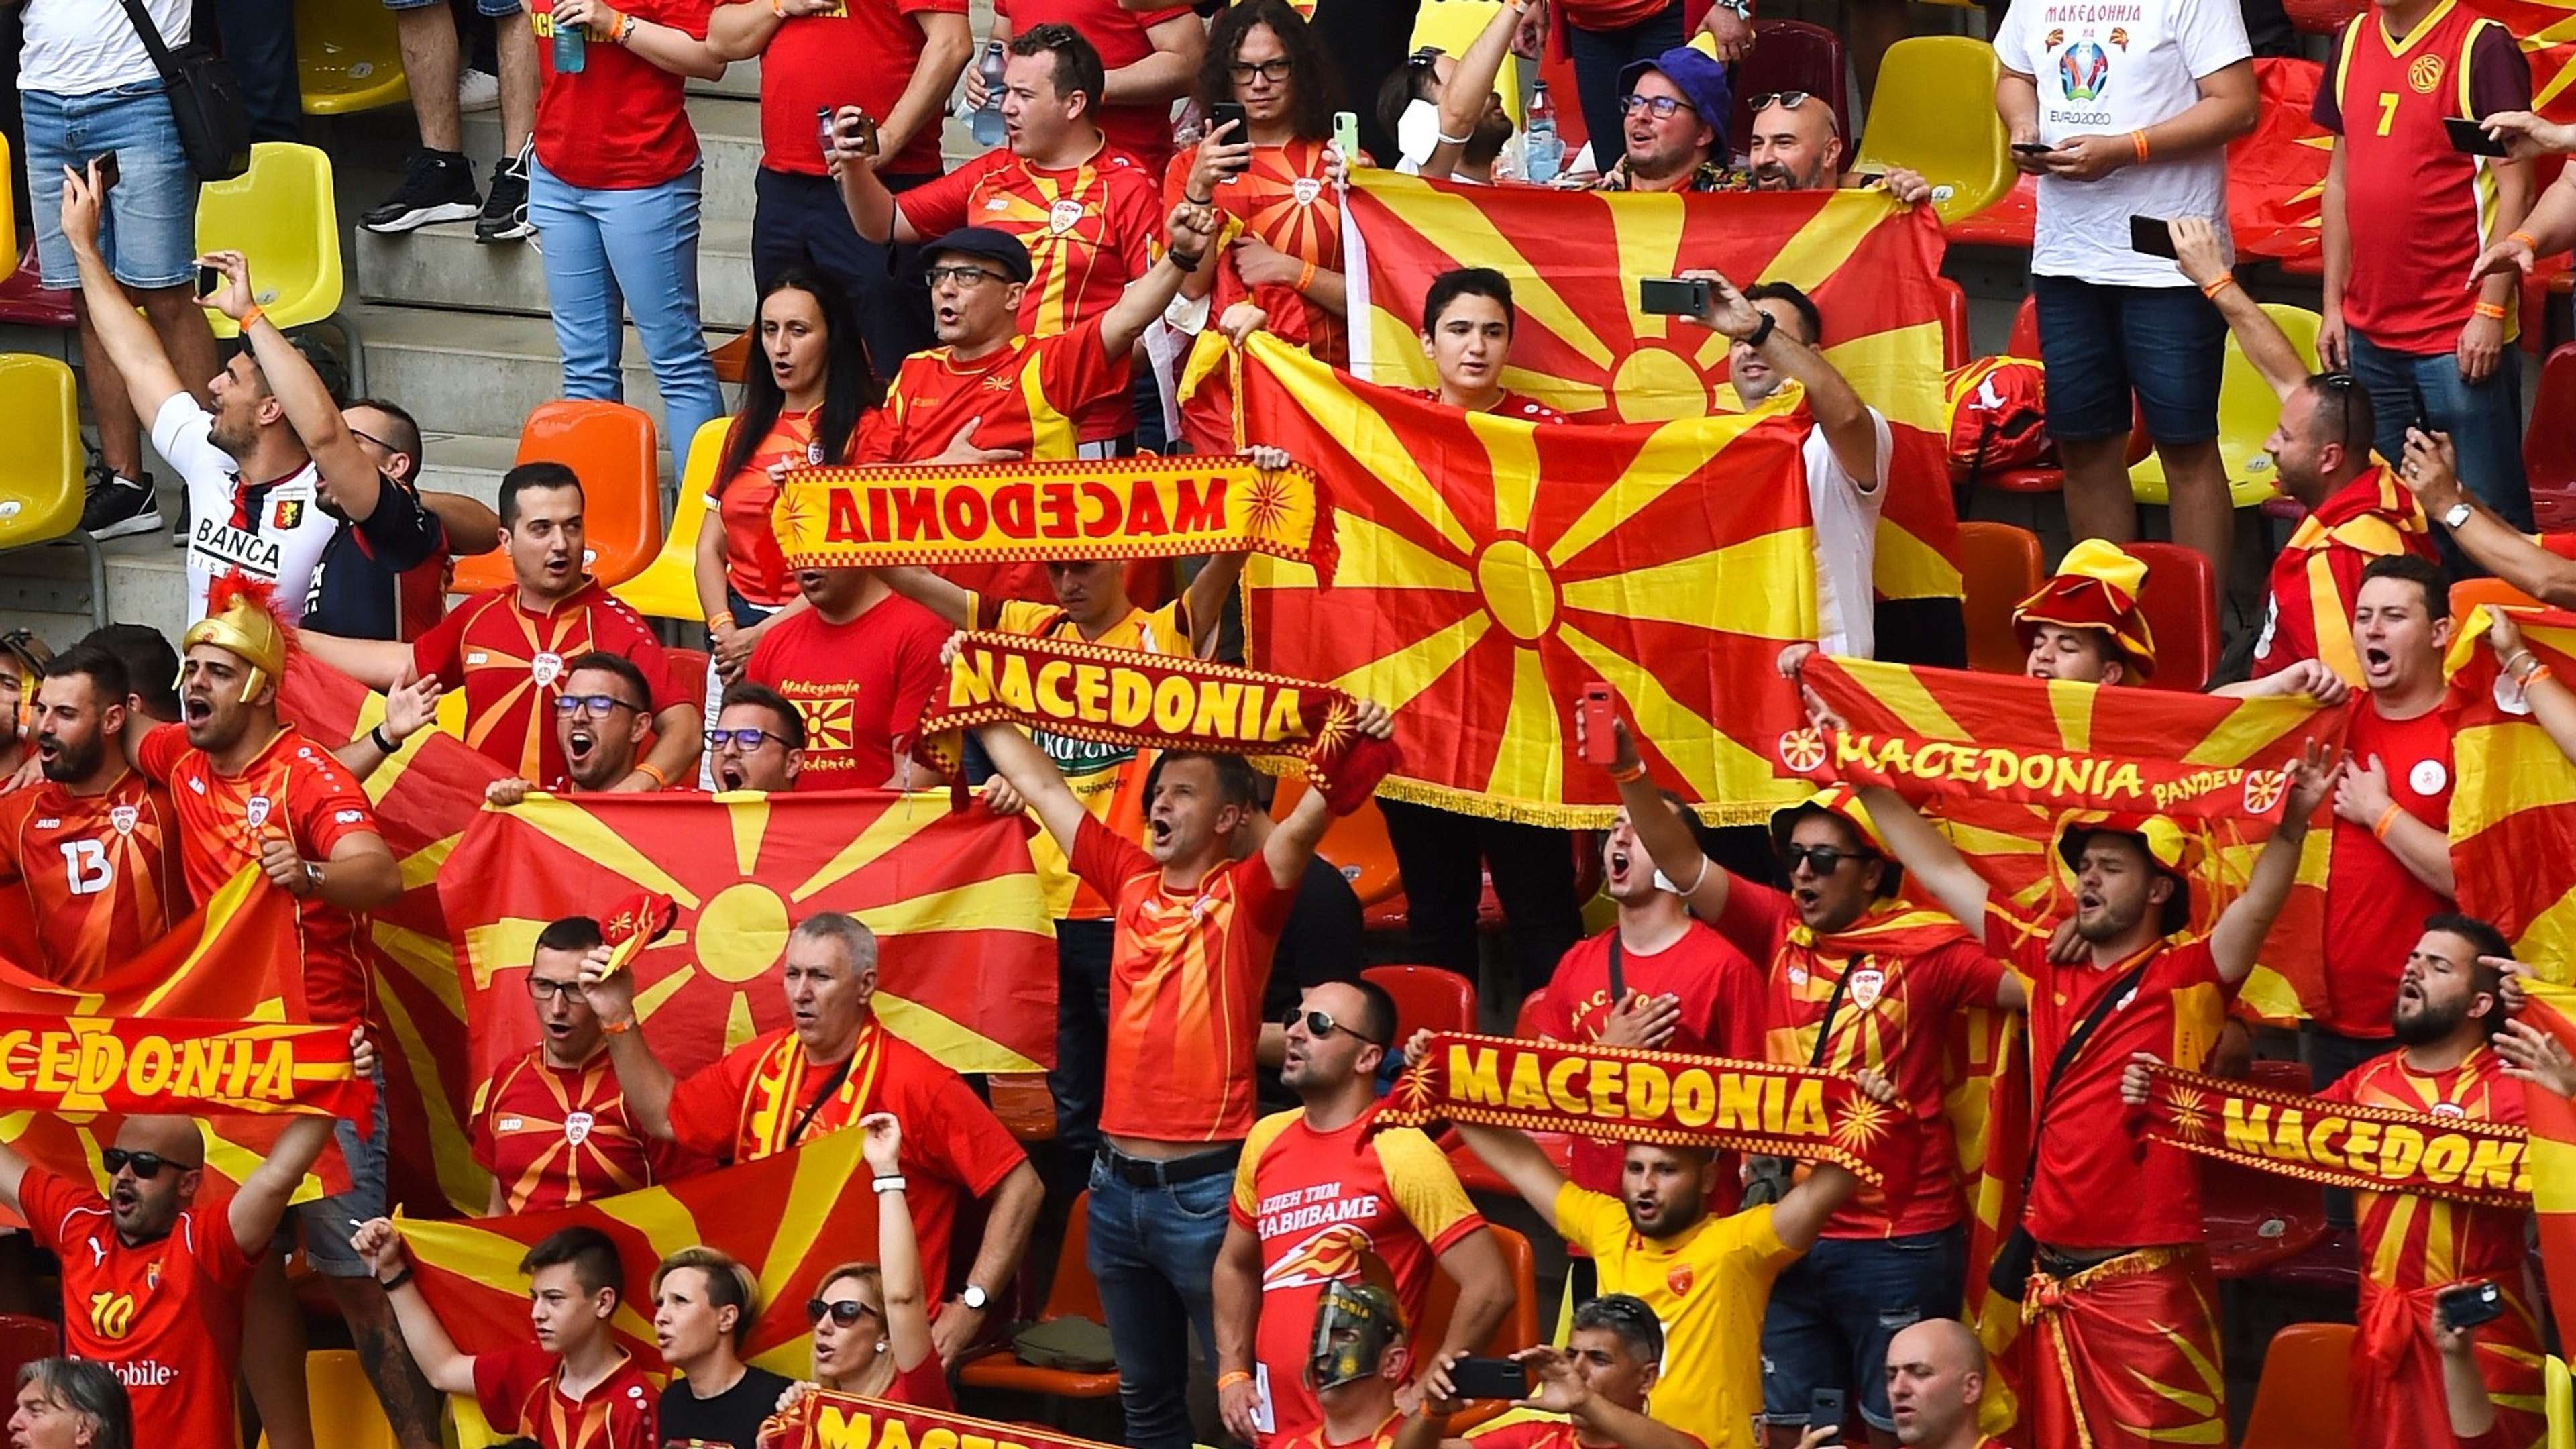 North Macedonia fans